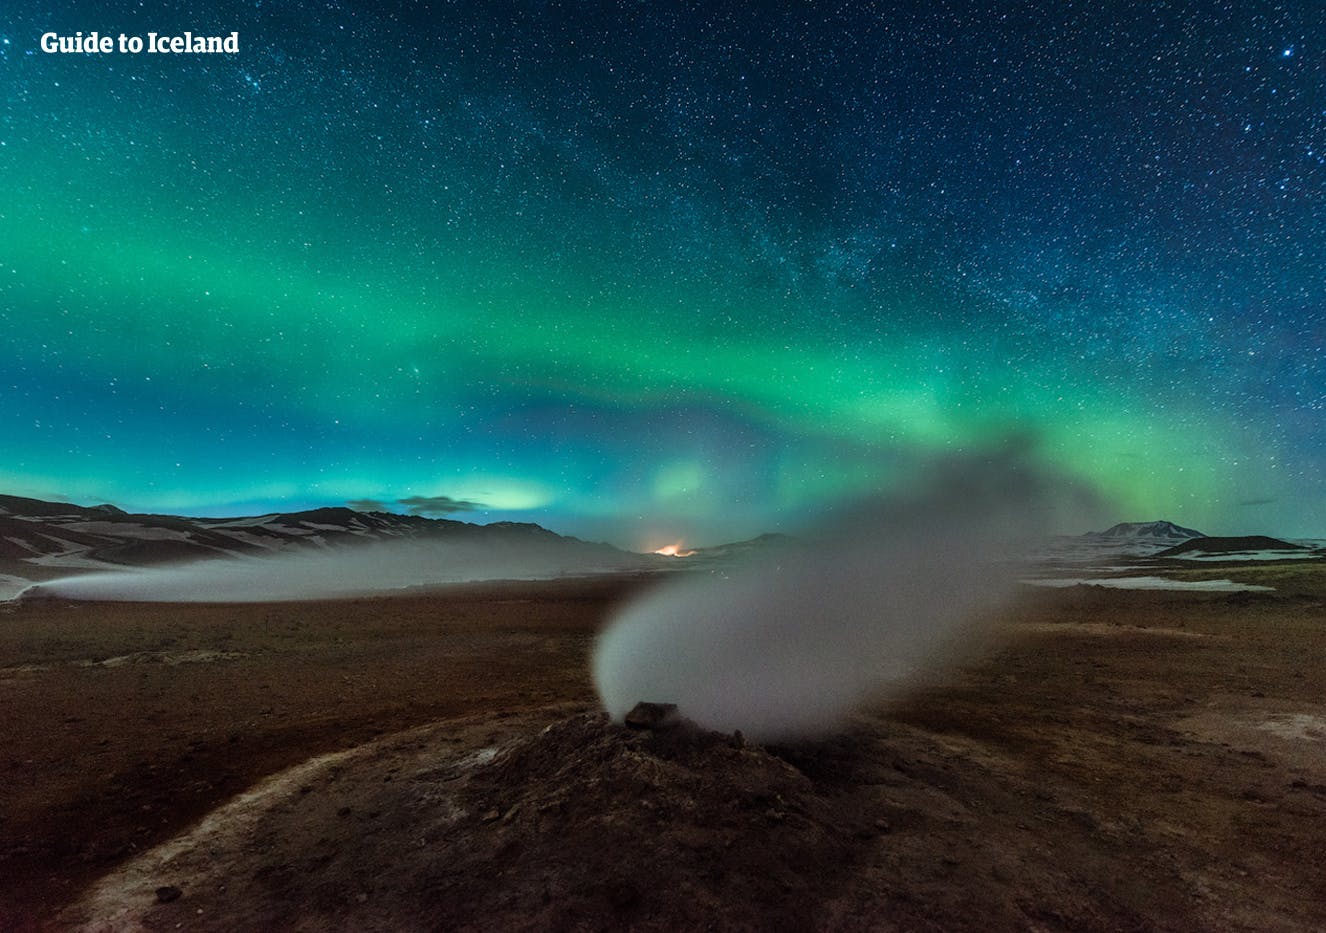 L'aurora boreale e il cielo stellato sopra l'area geotermica vicino al lago Mývatn